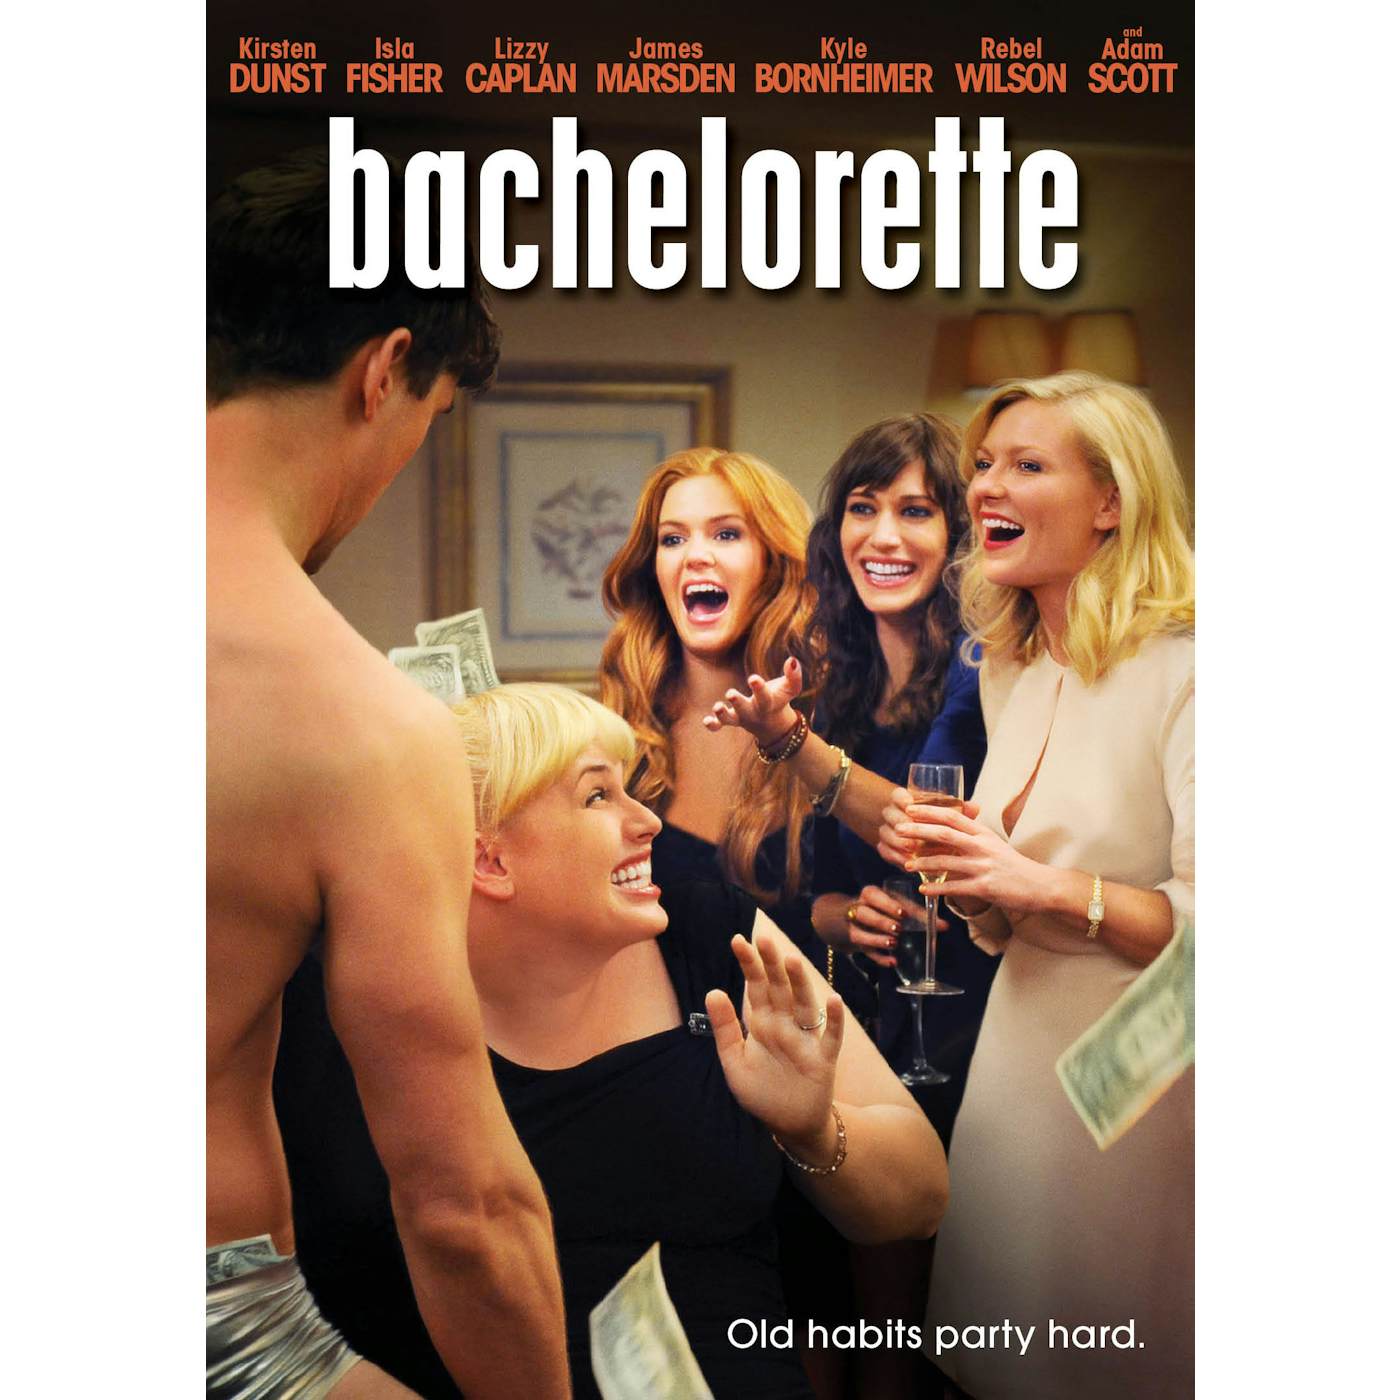 BACHELORETTE DVD